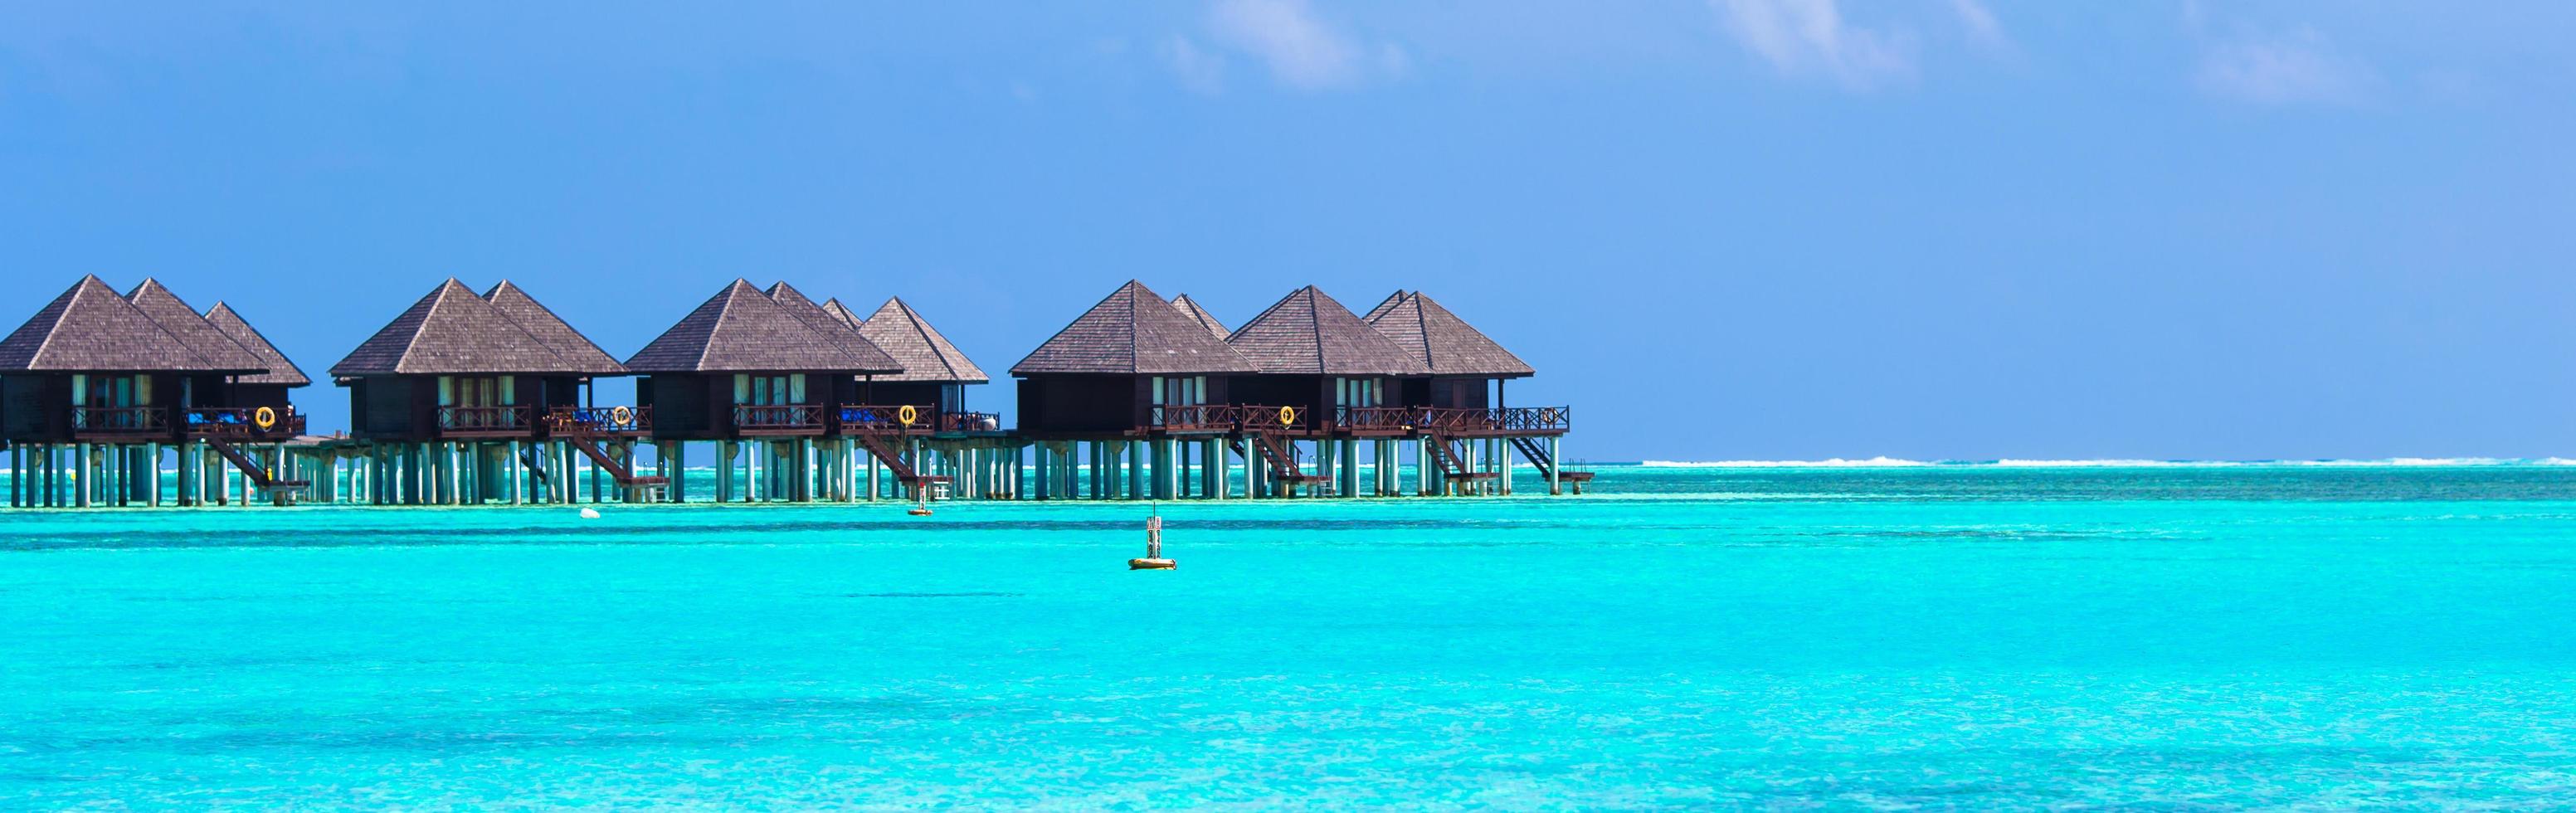 maldivas, sul da ásia, 2020 - vilas aquáticas em uma ilha tropical foto